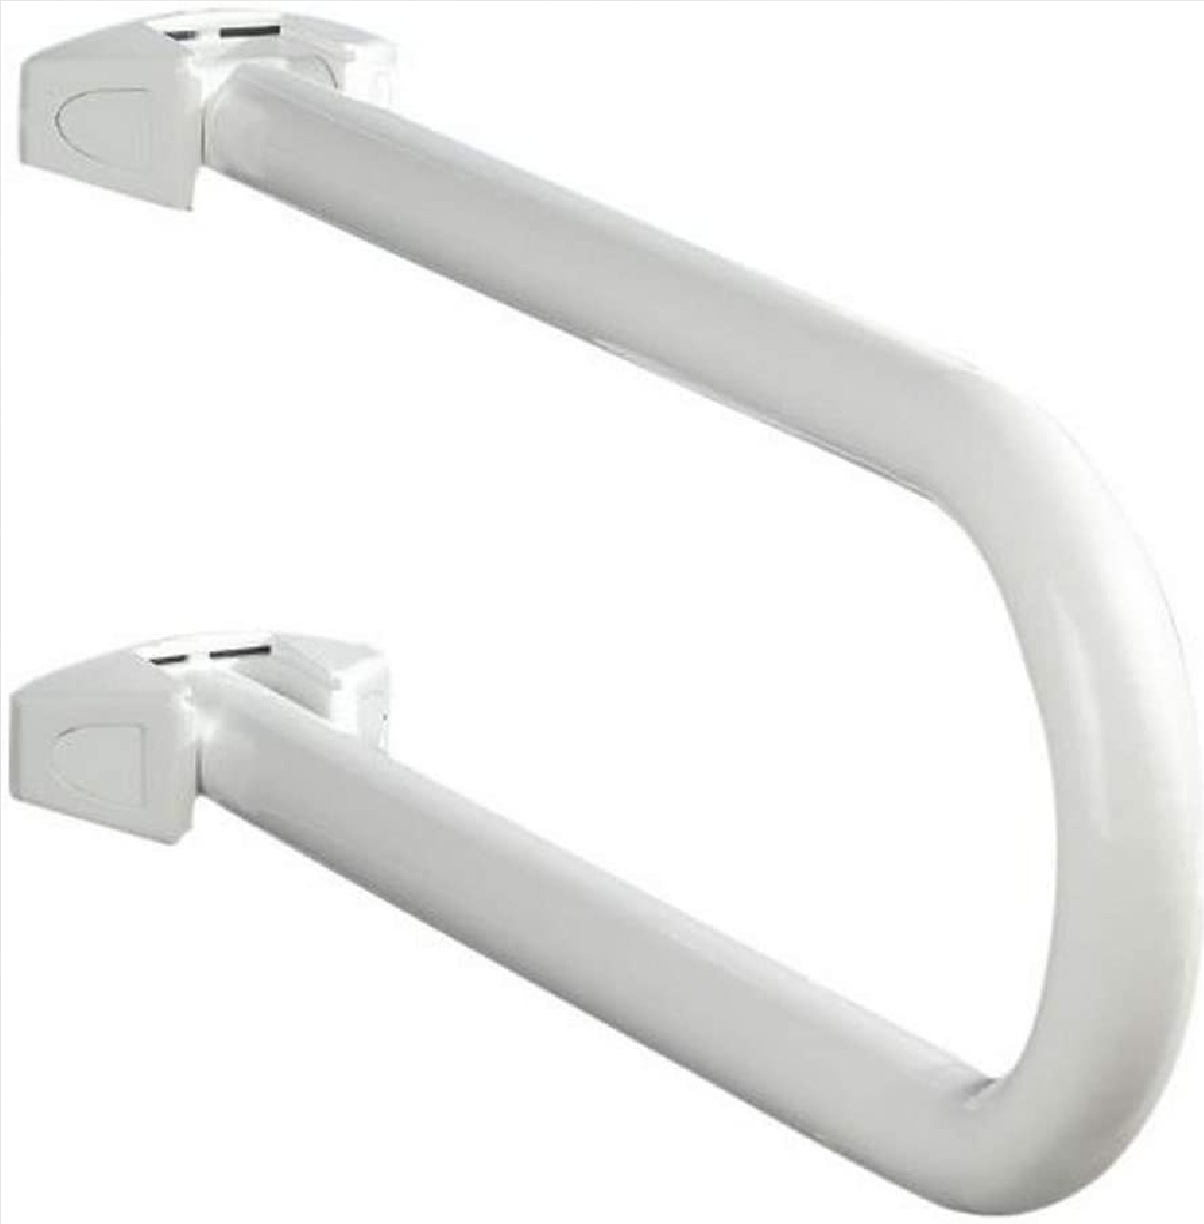 Badstützgriff Secura klappbar - für Waschbecken- und WC-Sitz Bereich, klappbar, Aluminium, 53 x 21 x 10 cm, Weiß